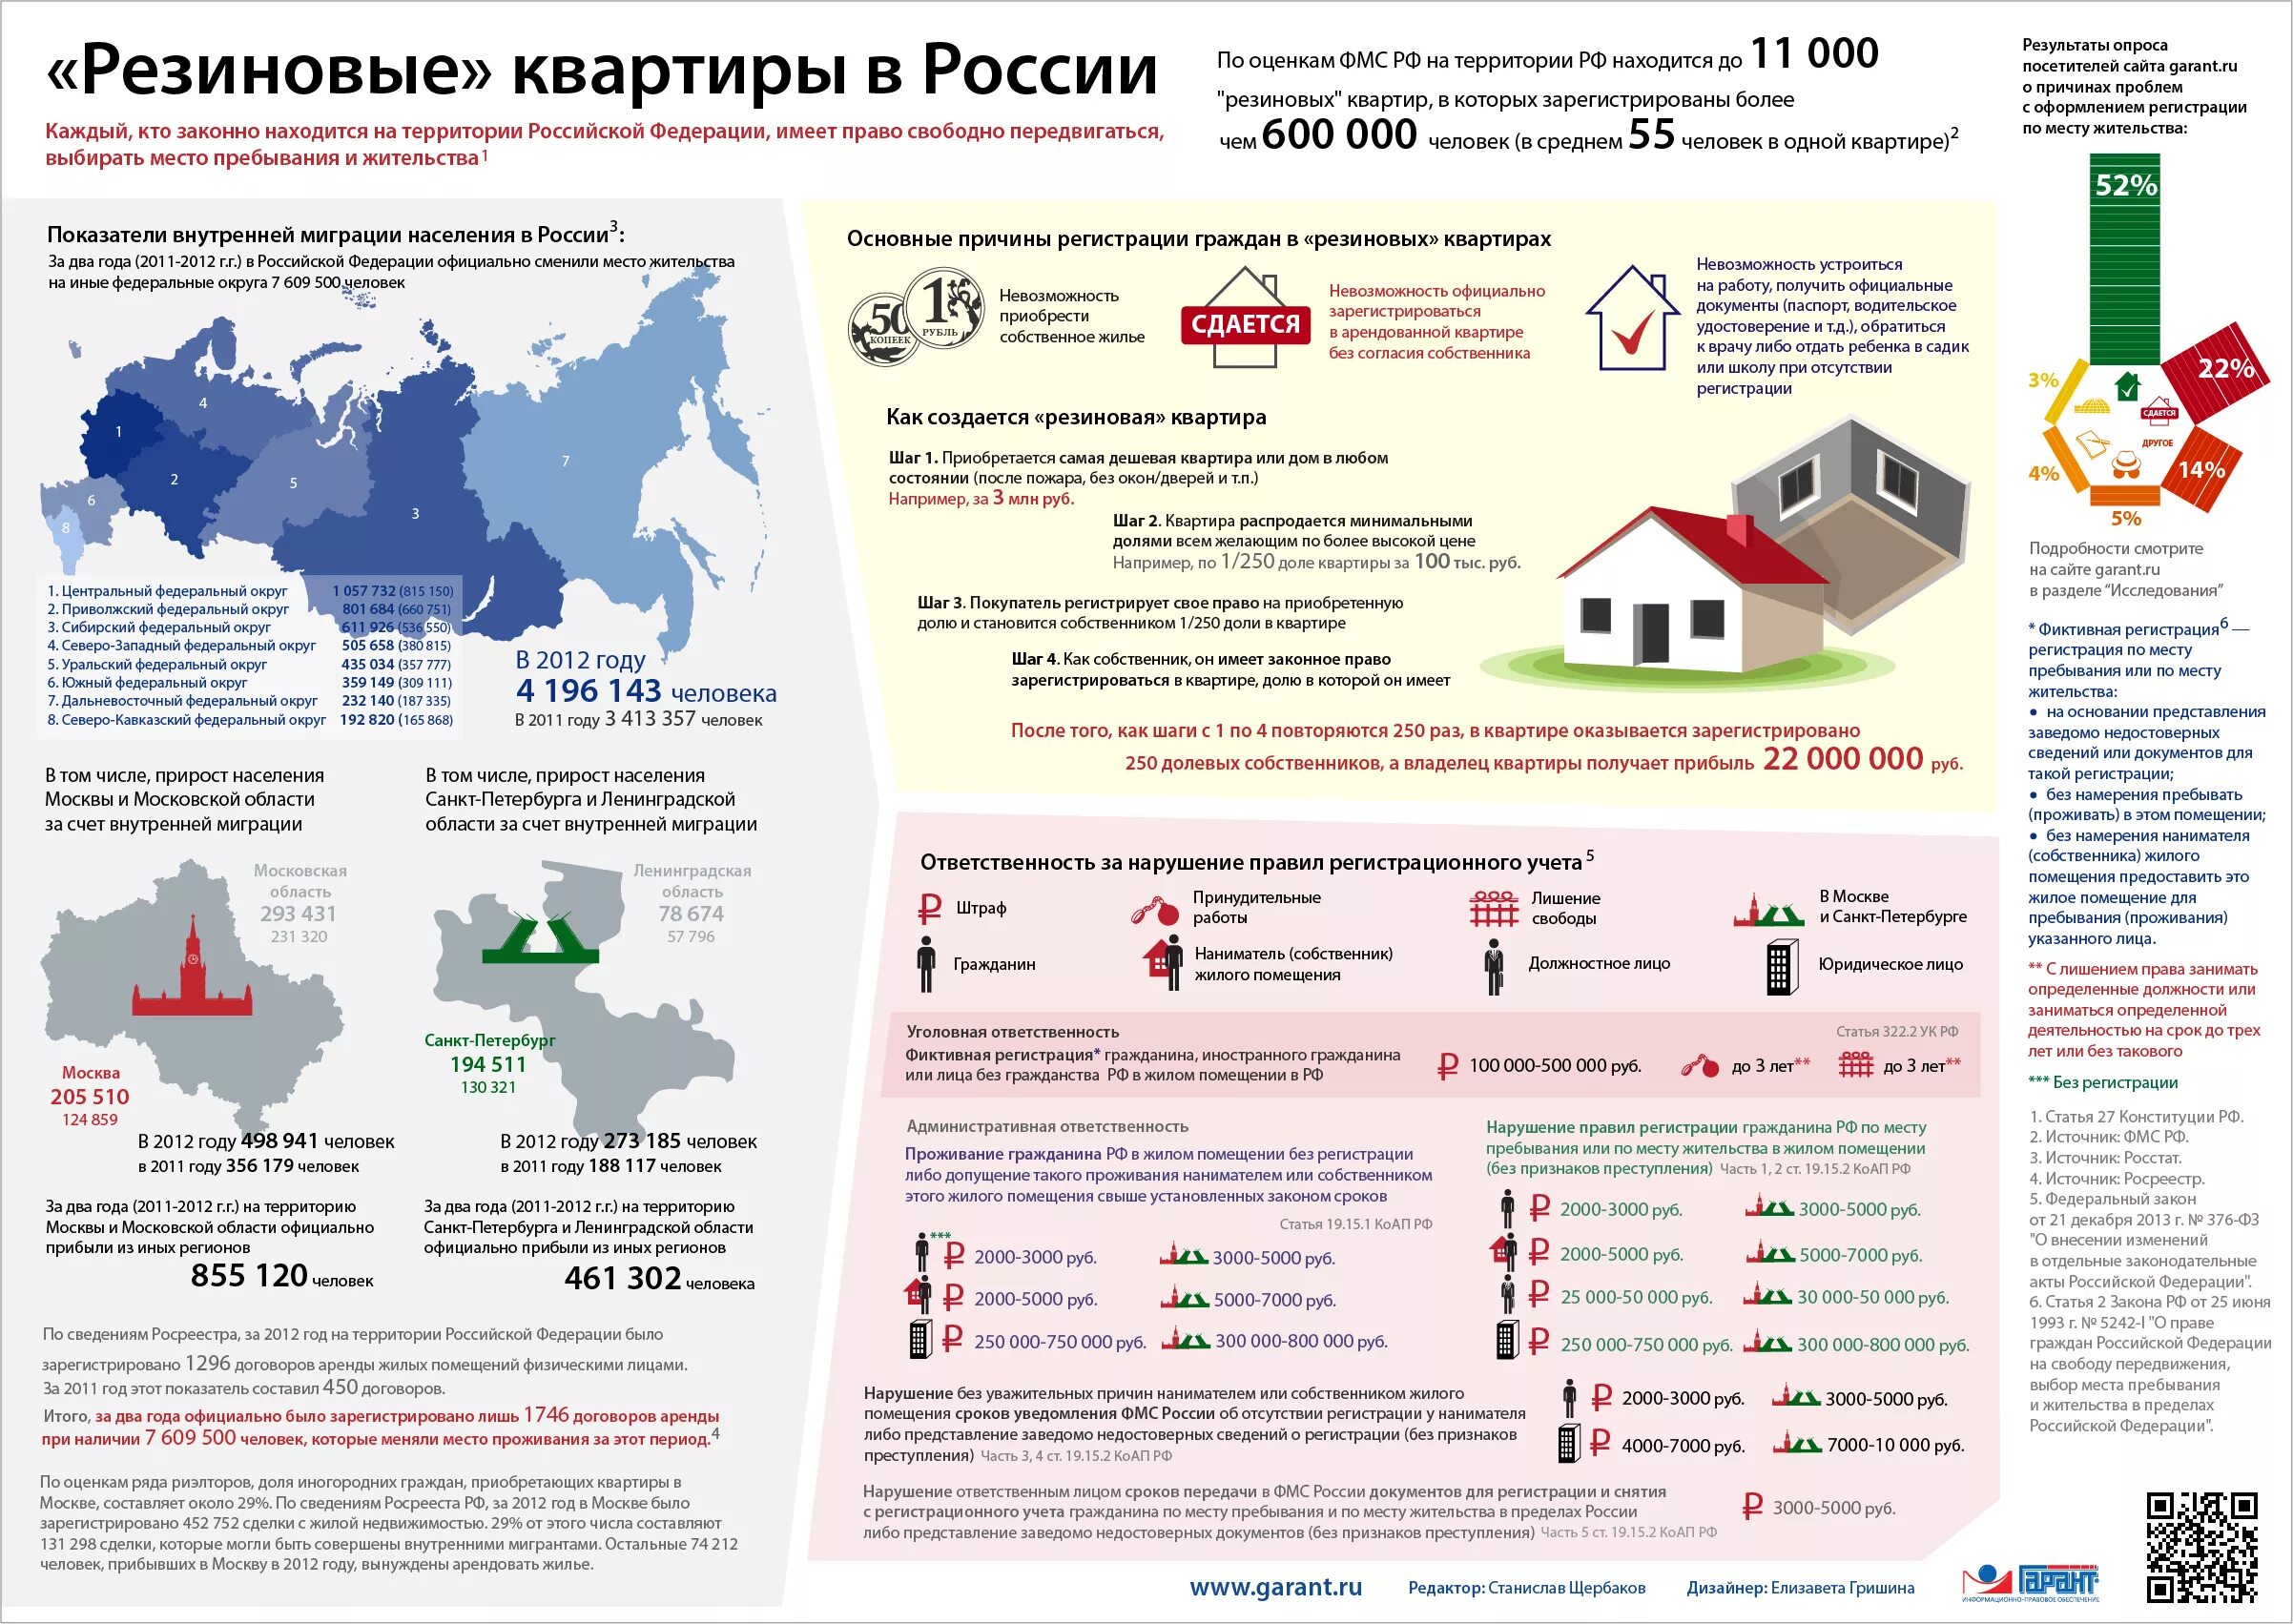 Закон о доле в квартире. Закон о резиновых квартирах. Миграция в России инфографика. Инфографика помещения. Инфографика жилого помещения.